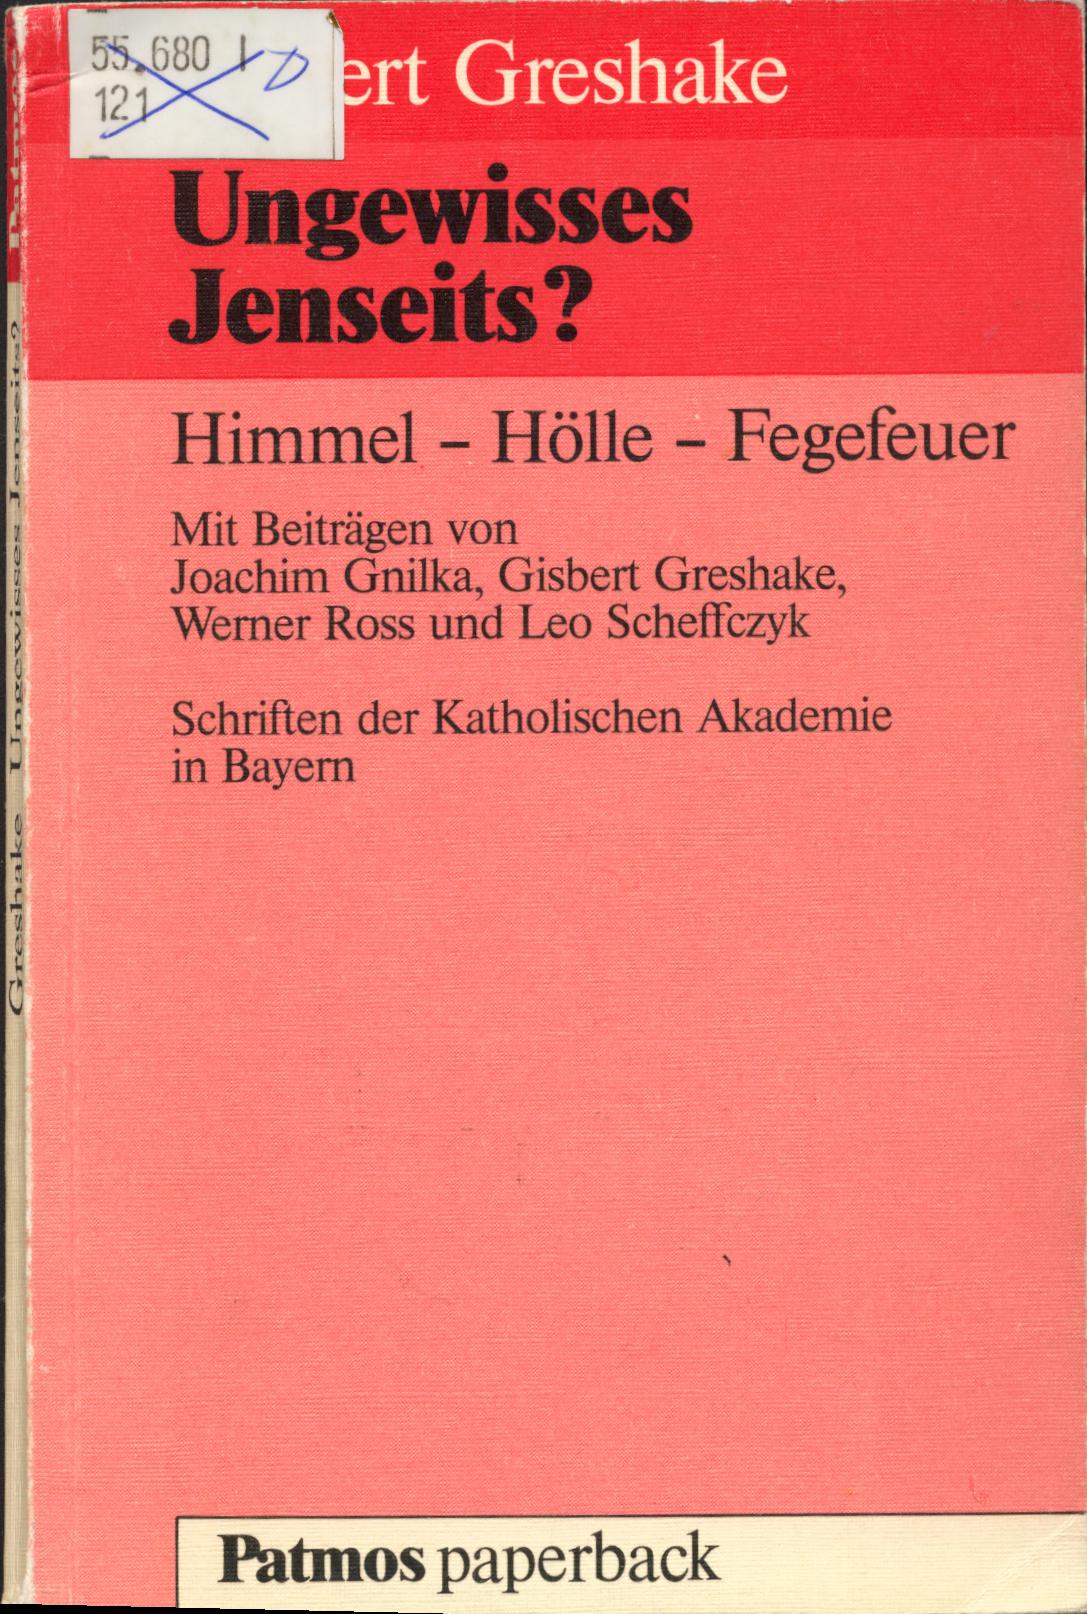 Ungewisses Jenseits? Himmel - Hölle - Fegefeuer - Gnilka, Joachim, Gisbert Greshake und Werner Ross